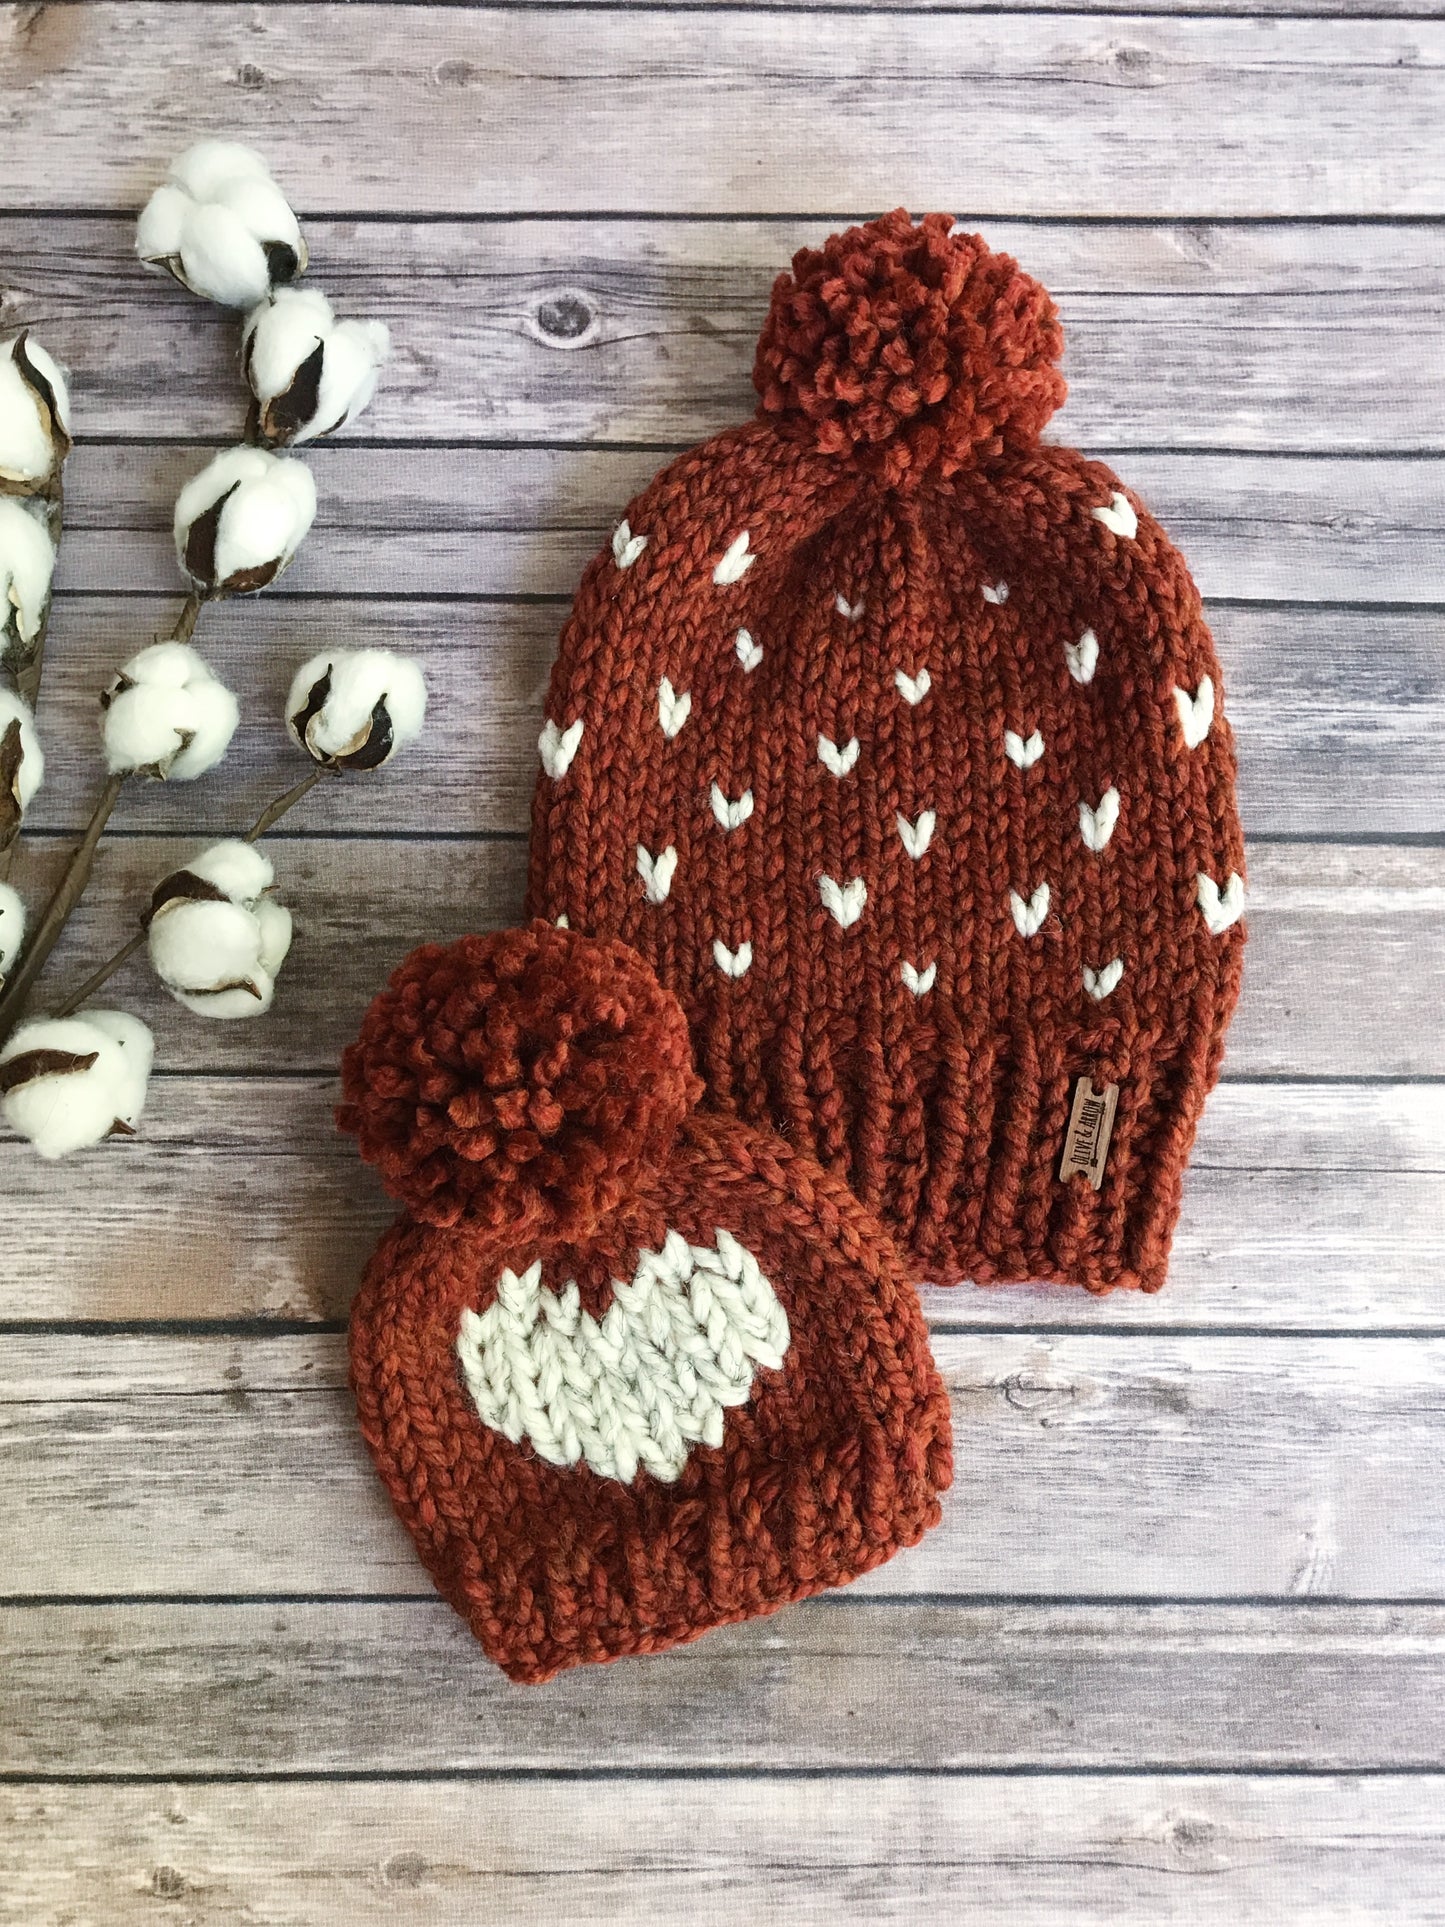 Big Heart Knit Baby Hat Beanie Handmade Yarn Pom Pom